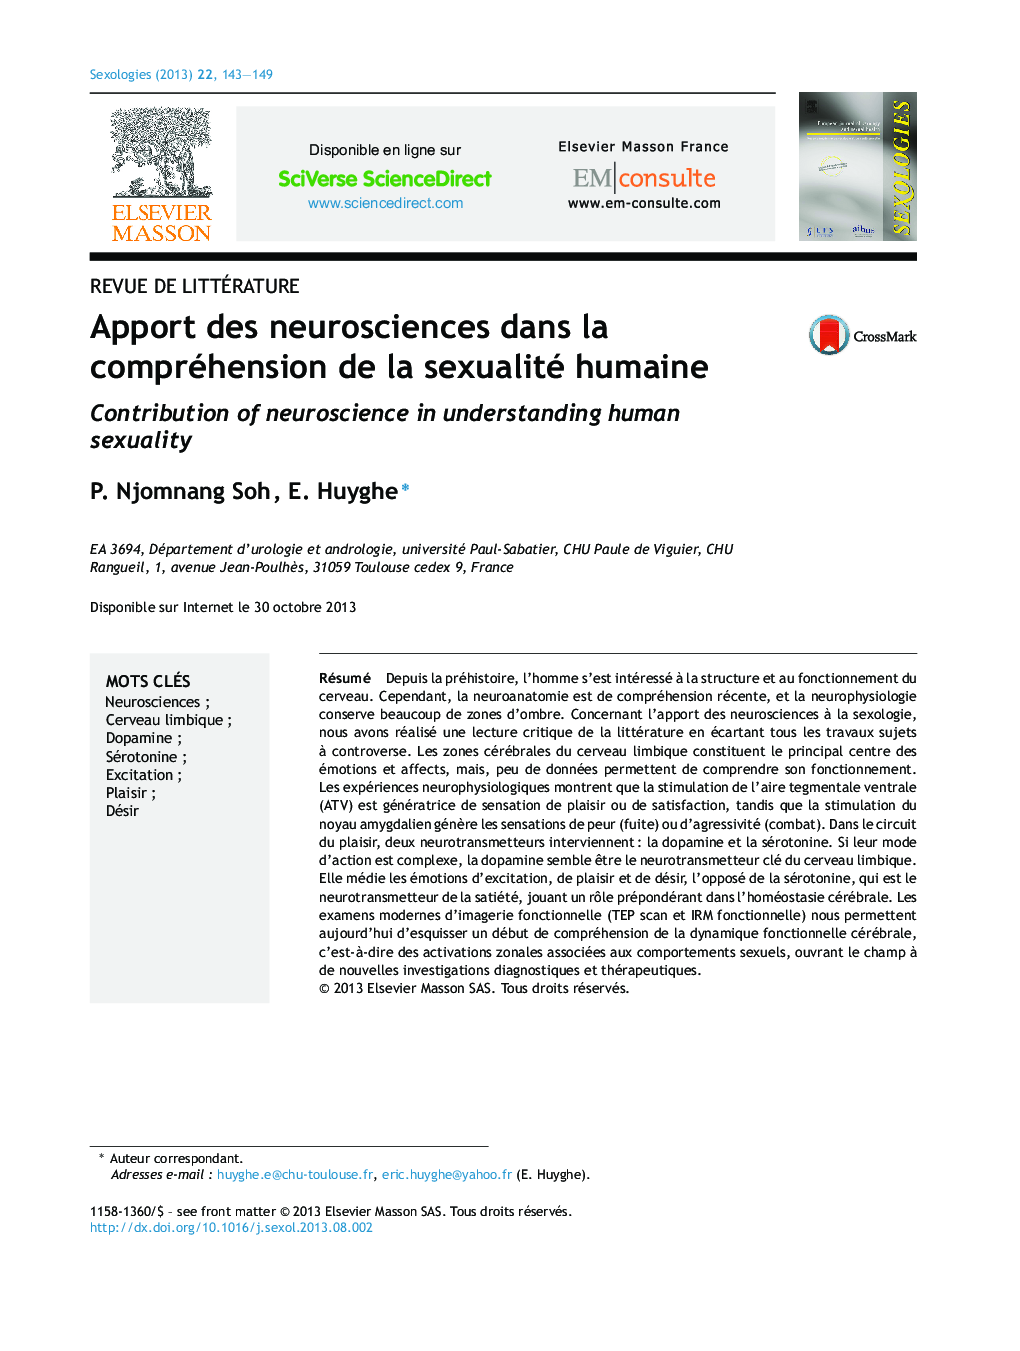 Apport des neurosciences dans la compréhension de la sexualité humaine